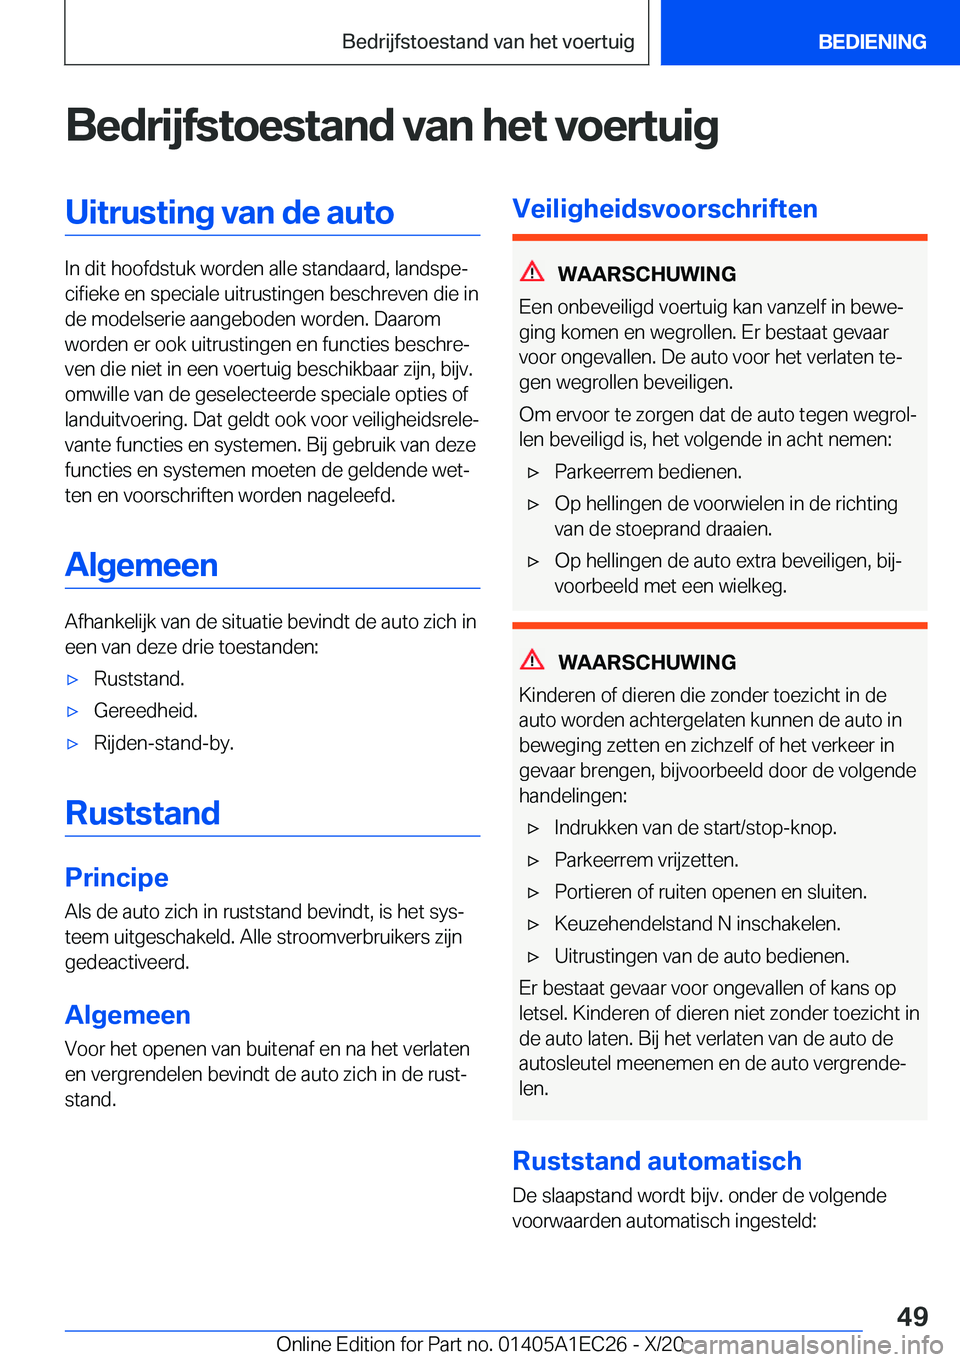 BMW 8 SERIES GRAN COUPE 2021  Instructieboekjes (in Dutch) �B�e�d�r�i�j�f�s�t�o�e�s�t�a�n�d��v�a�n��h�e�t��v�o�e�r�t�u�i�g�U�i�t�r�u�s�t�i�n�g��v�a�n��d�e��a�u�t�o
�I�n��d�i�t��h�o�o�f�d�s�t�u�k��w�o�r�d�e�n��a�l�l�e��s�t�a�n�d�a�a�r�d�,��l�a�n�d�